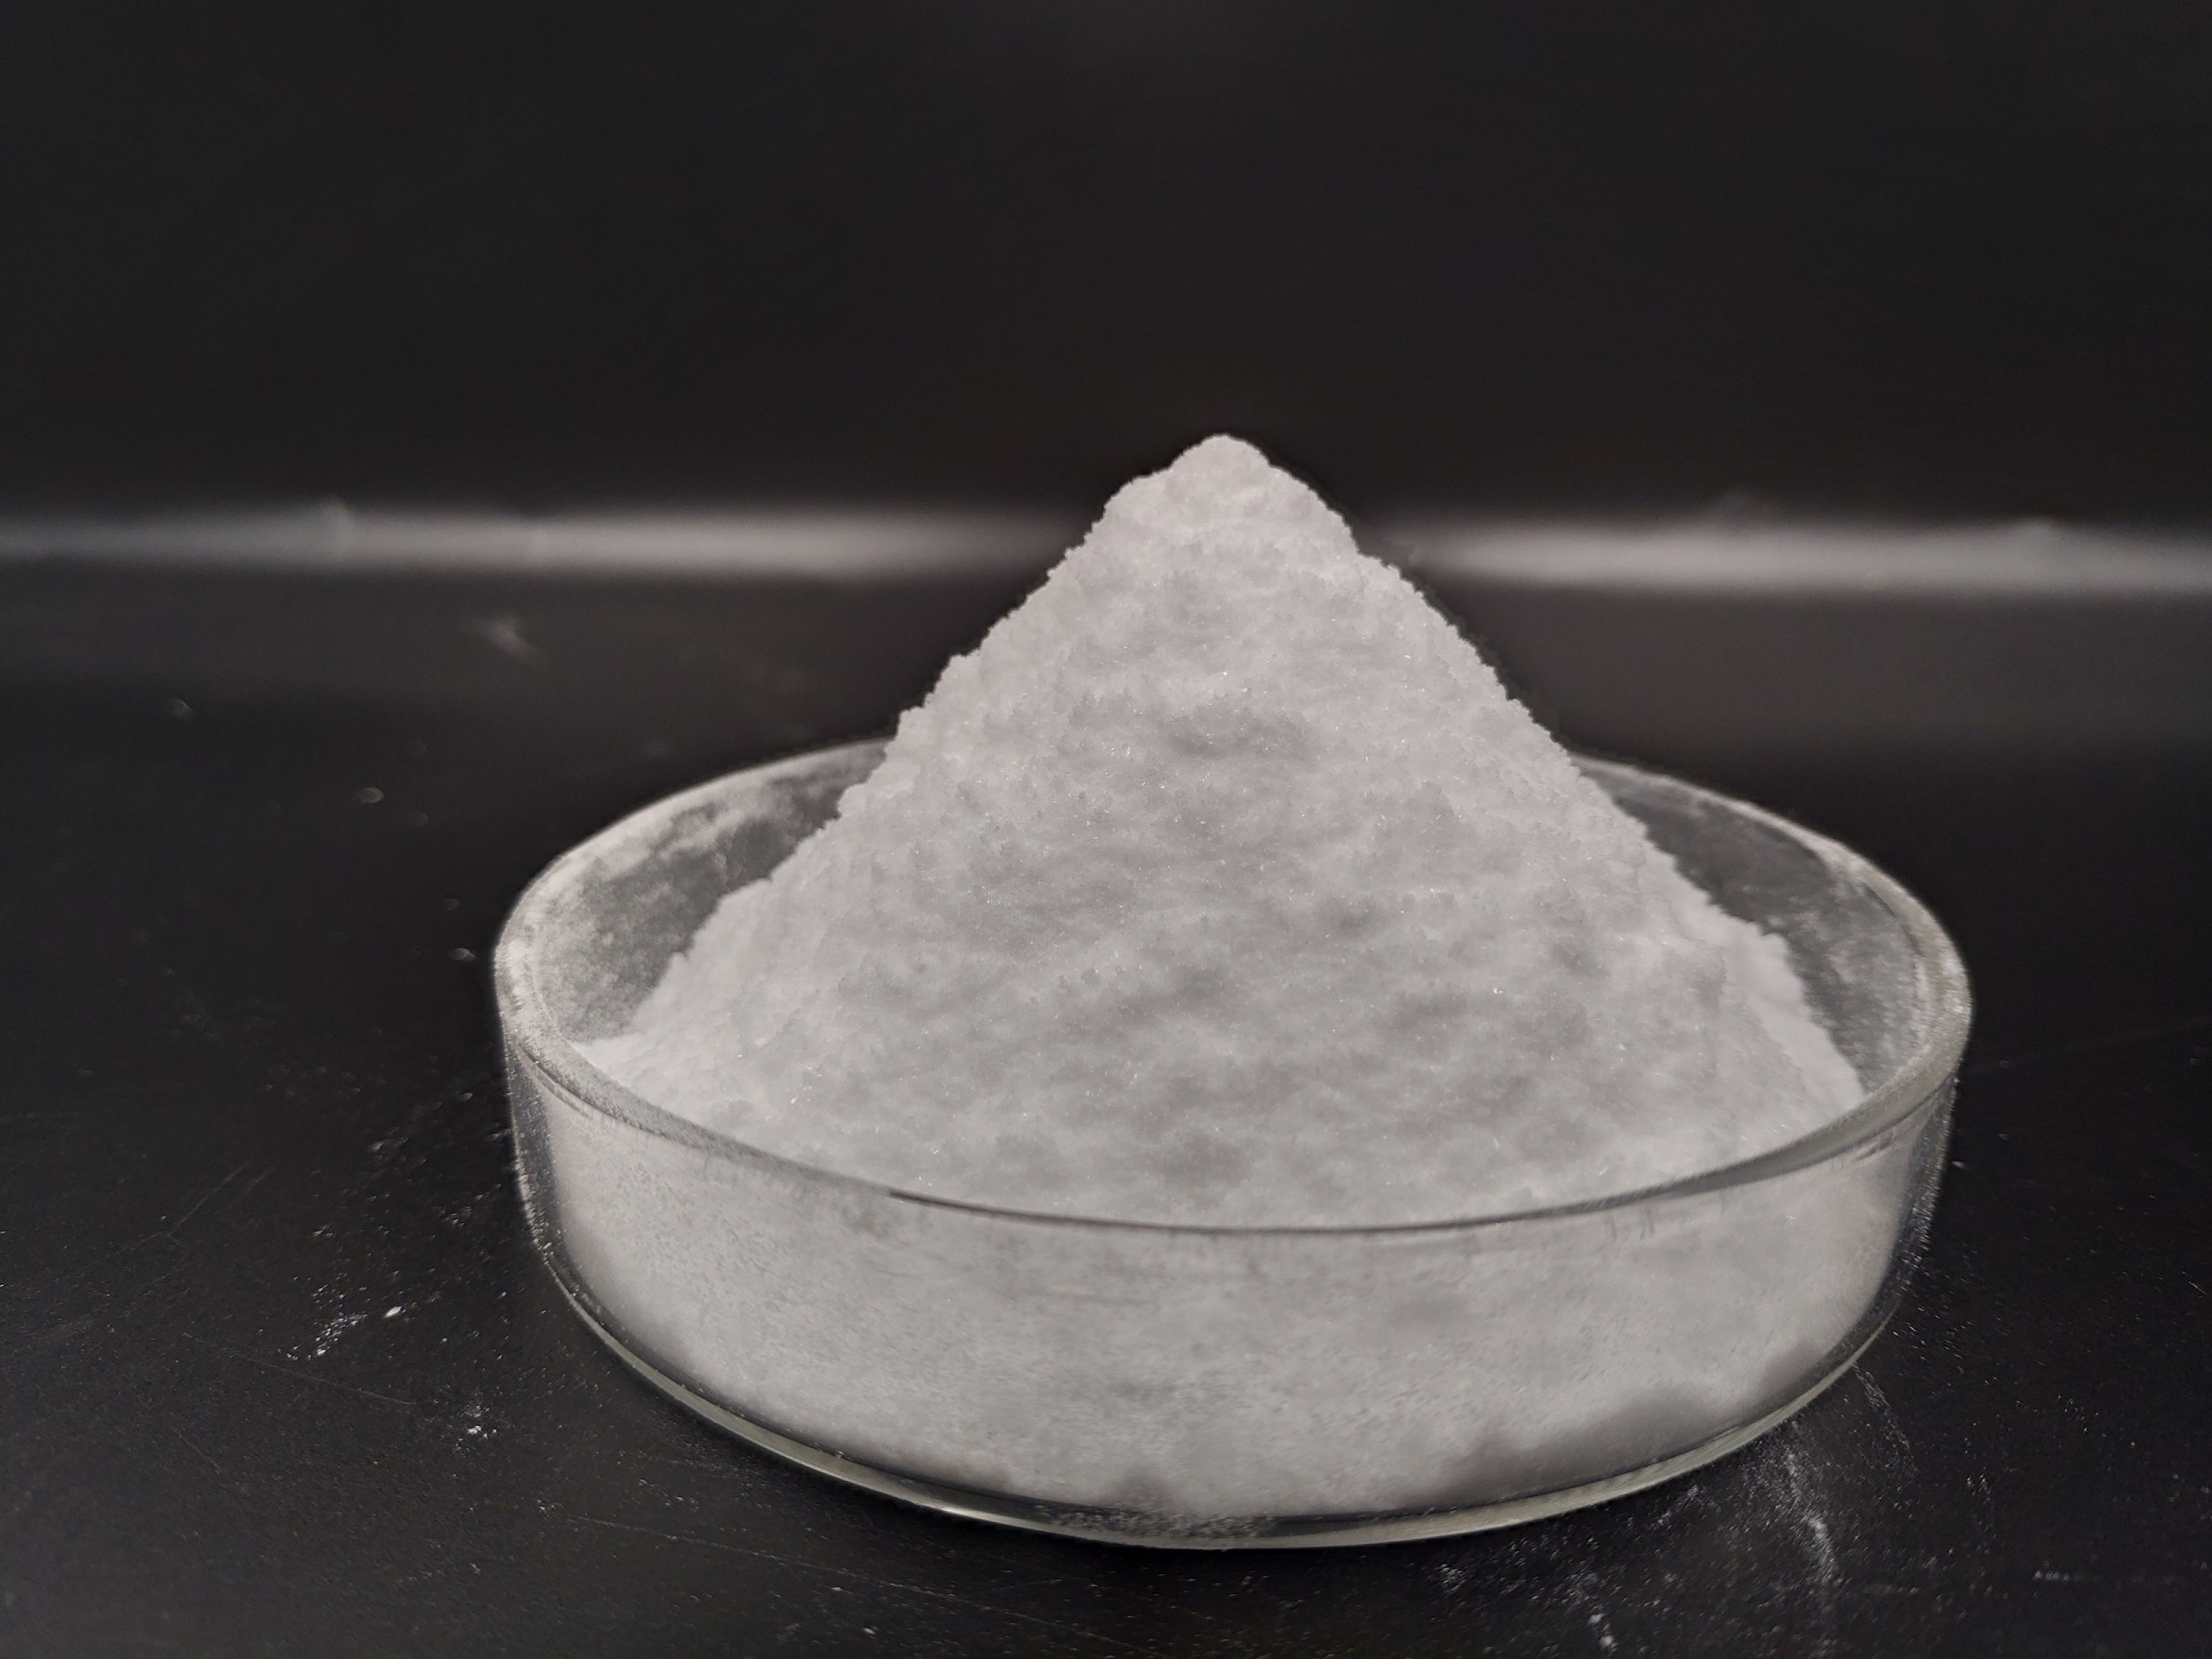 99.9% Pure Tetracaine Powder Tetracaine Base with USP BP Standard Tetracaine HCl CAS: 94-24-6